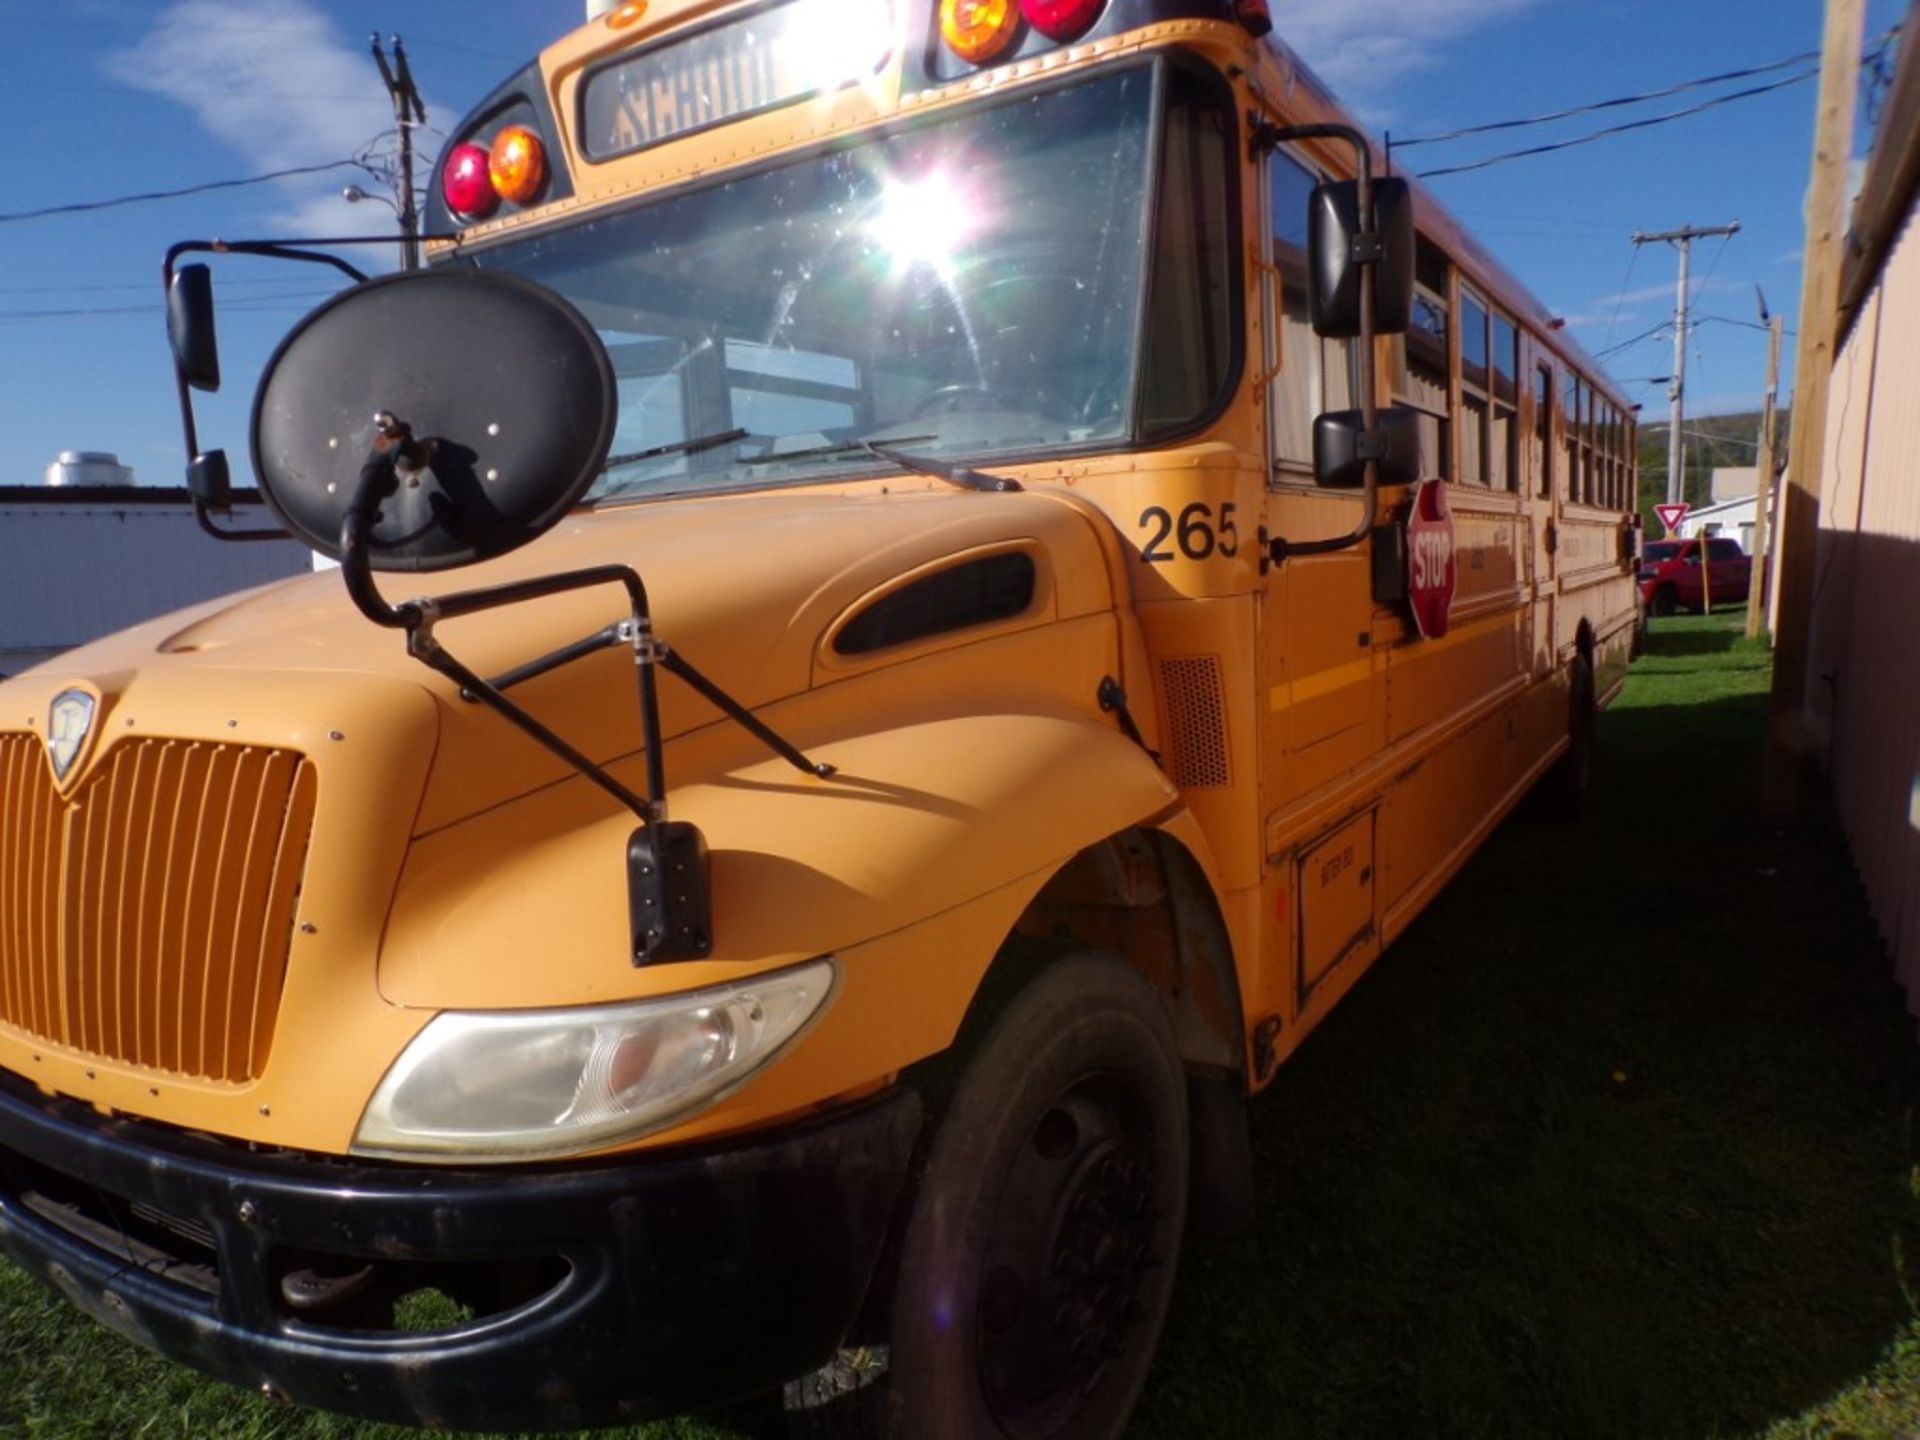 2014 International 66 Seat School Bus, Maxx Force Diesel, 165,315 Miles, # 265, Vin # - Bild 3 aus 7